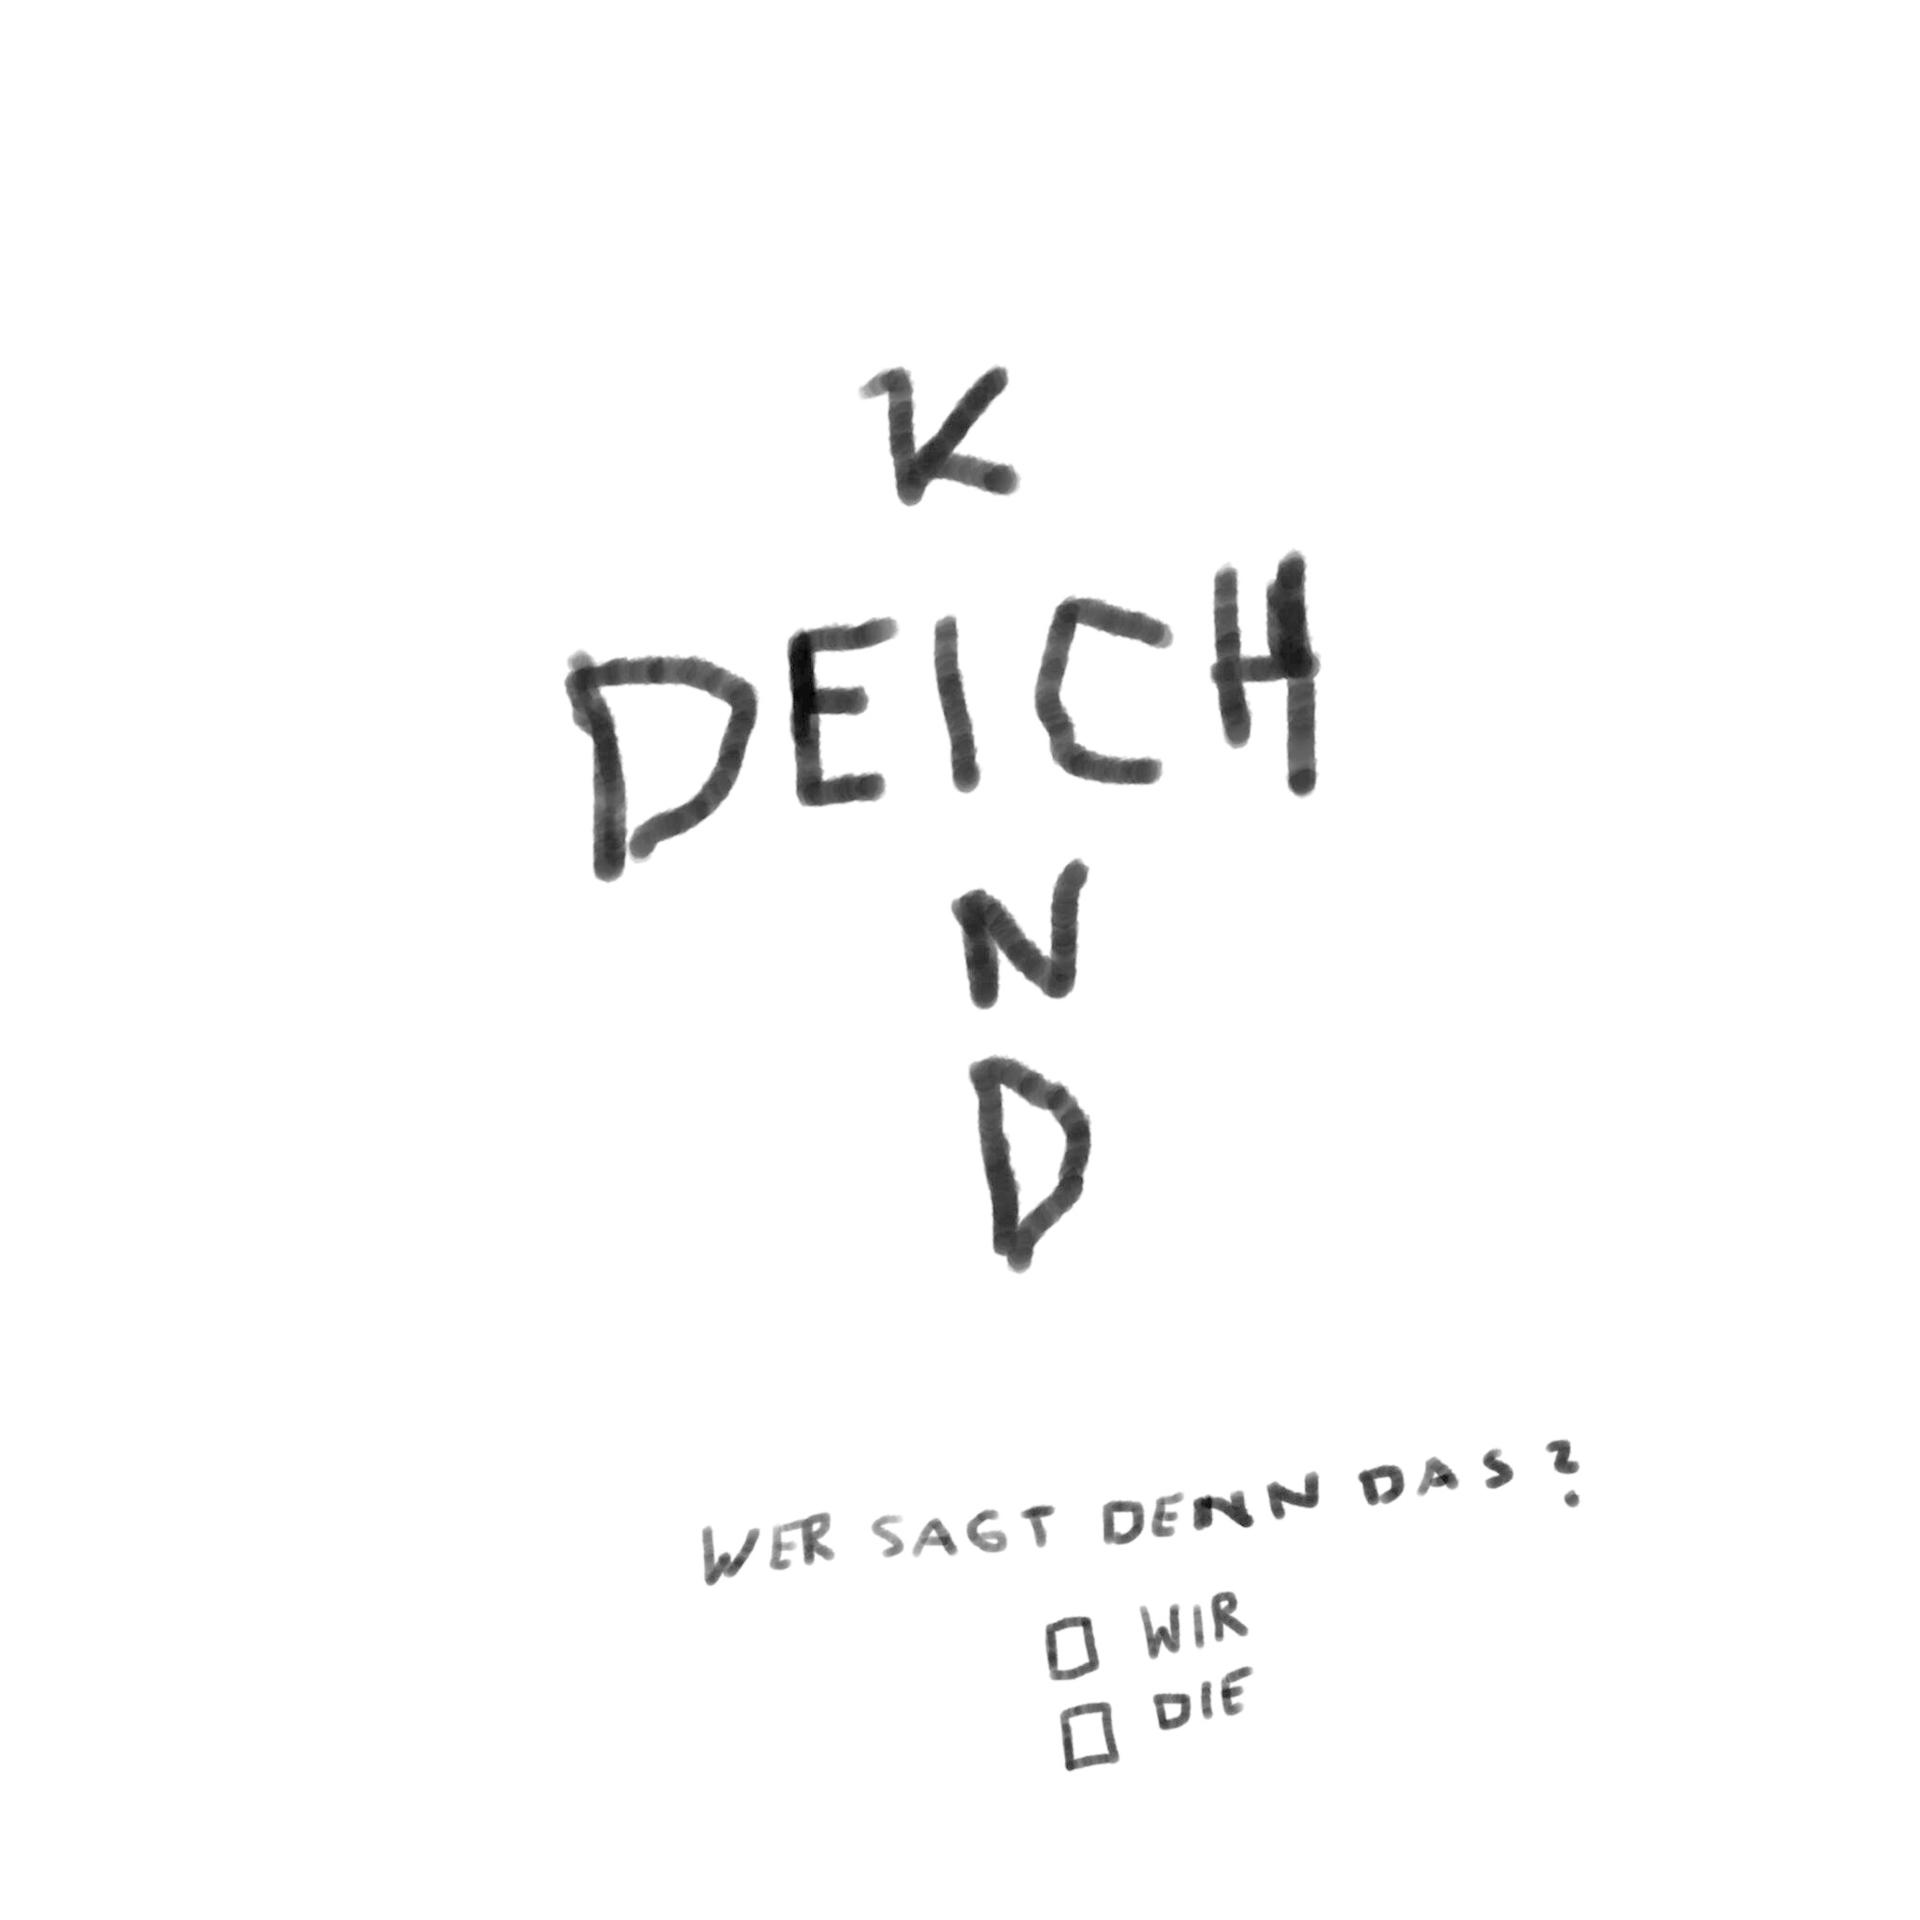 Wer Deichkind Sagt - Das? Denn (Richtig Limited (CD) - Box, Gute Edition)